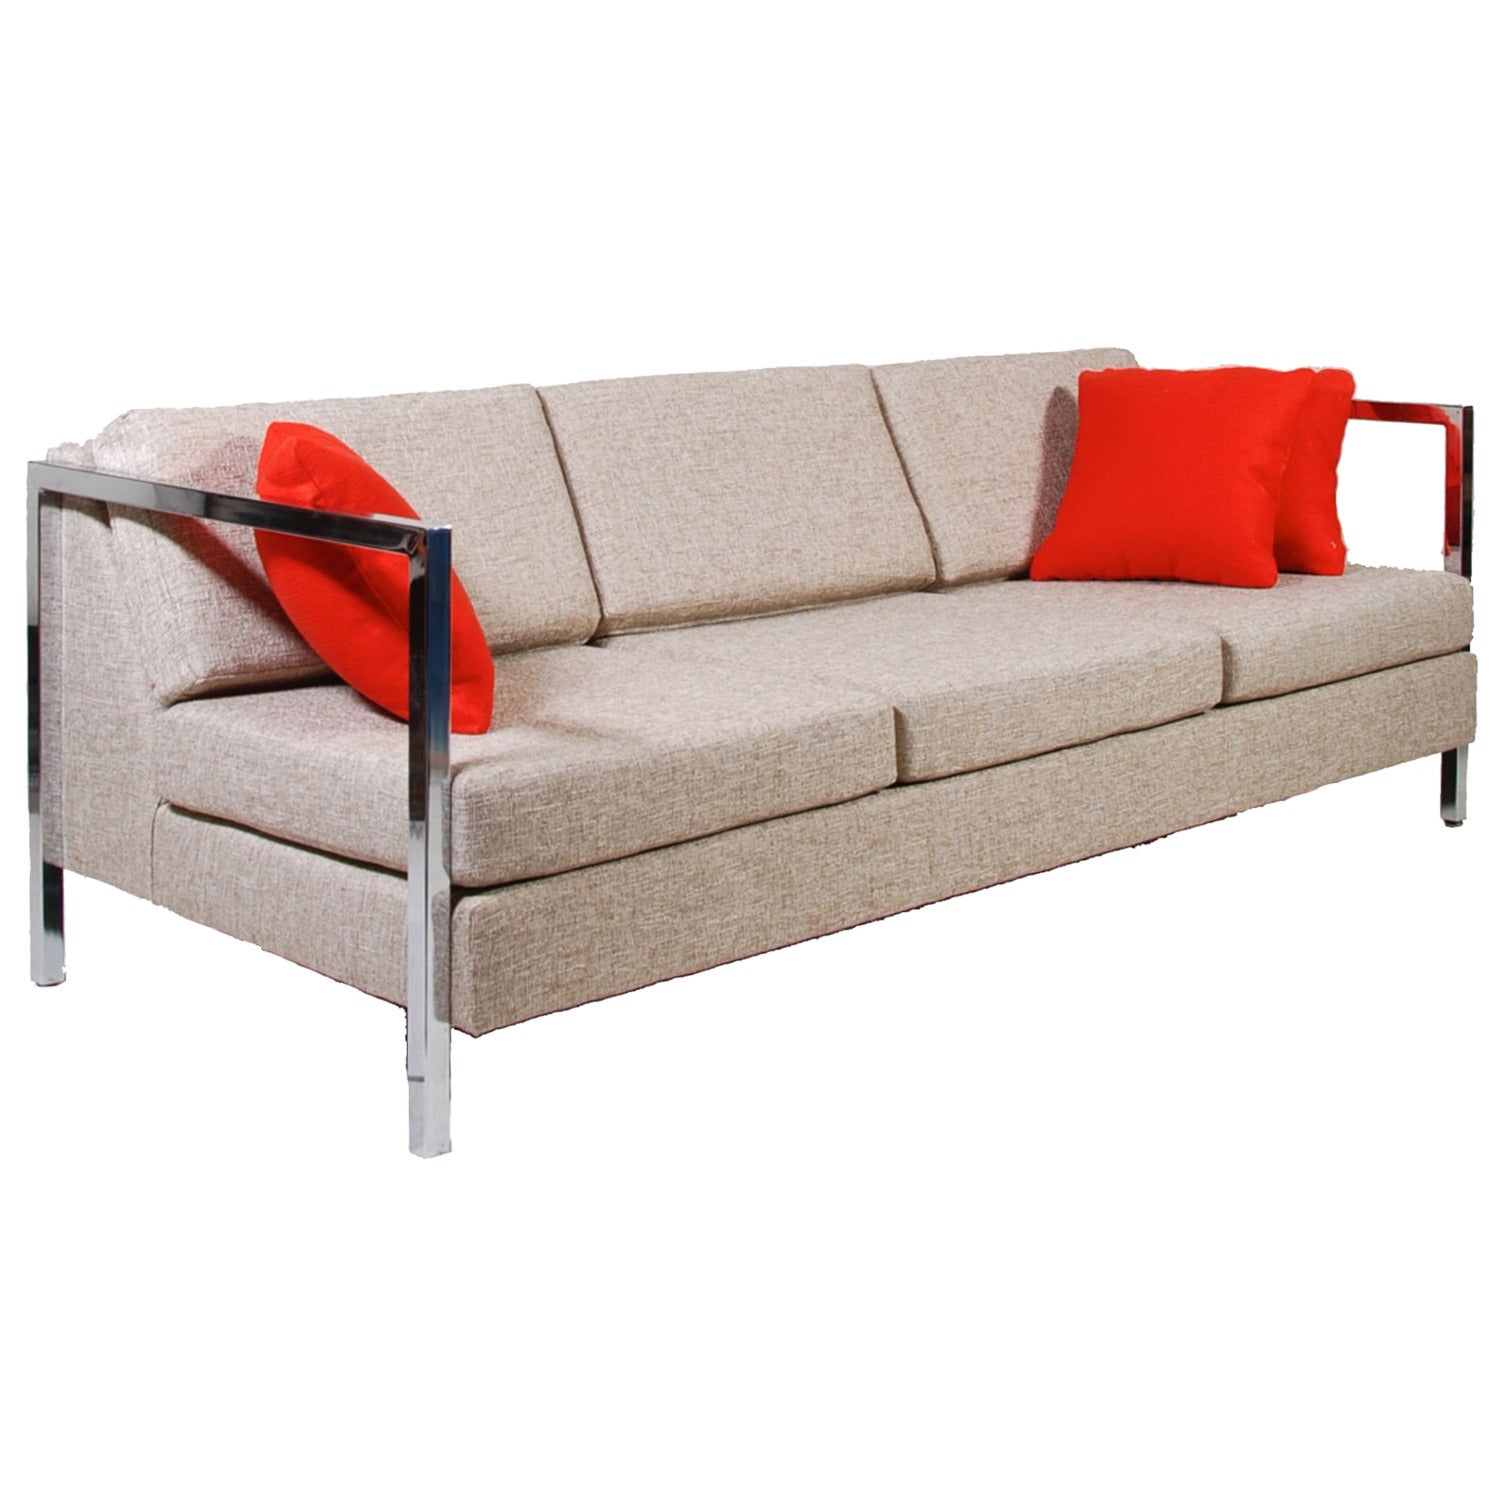 Milo Baughman Style Chrome-Armed Sofa